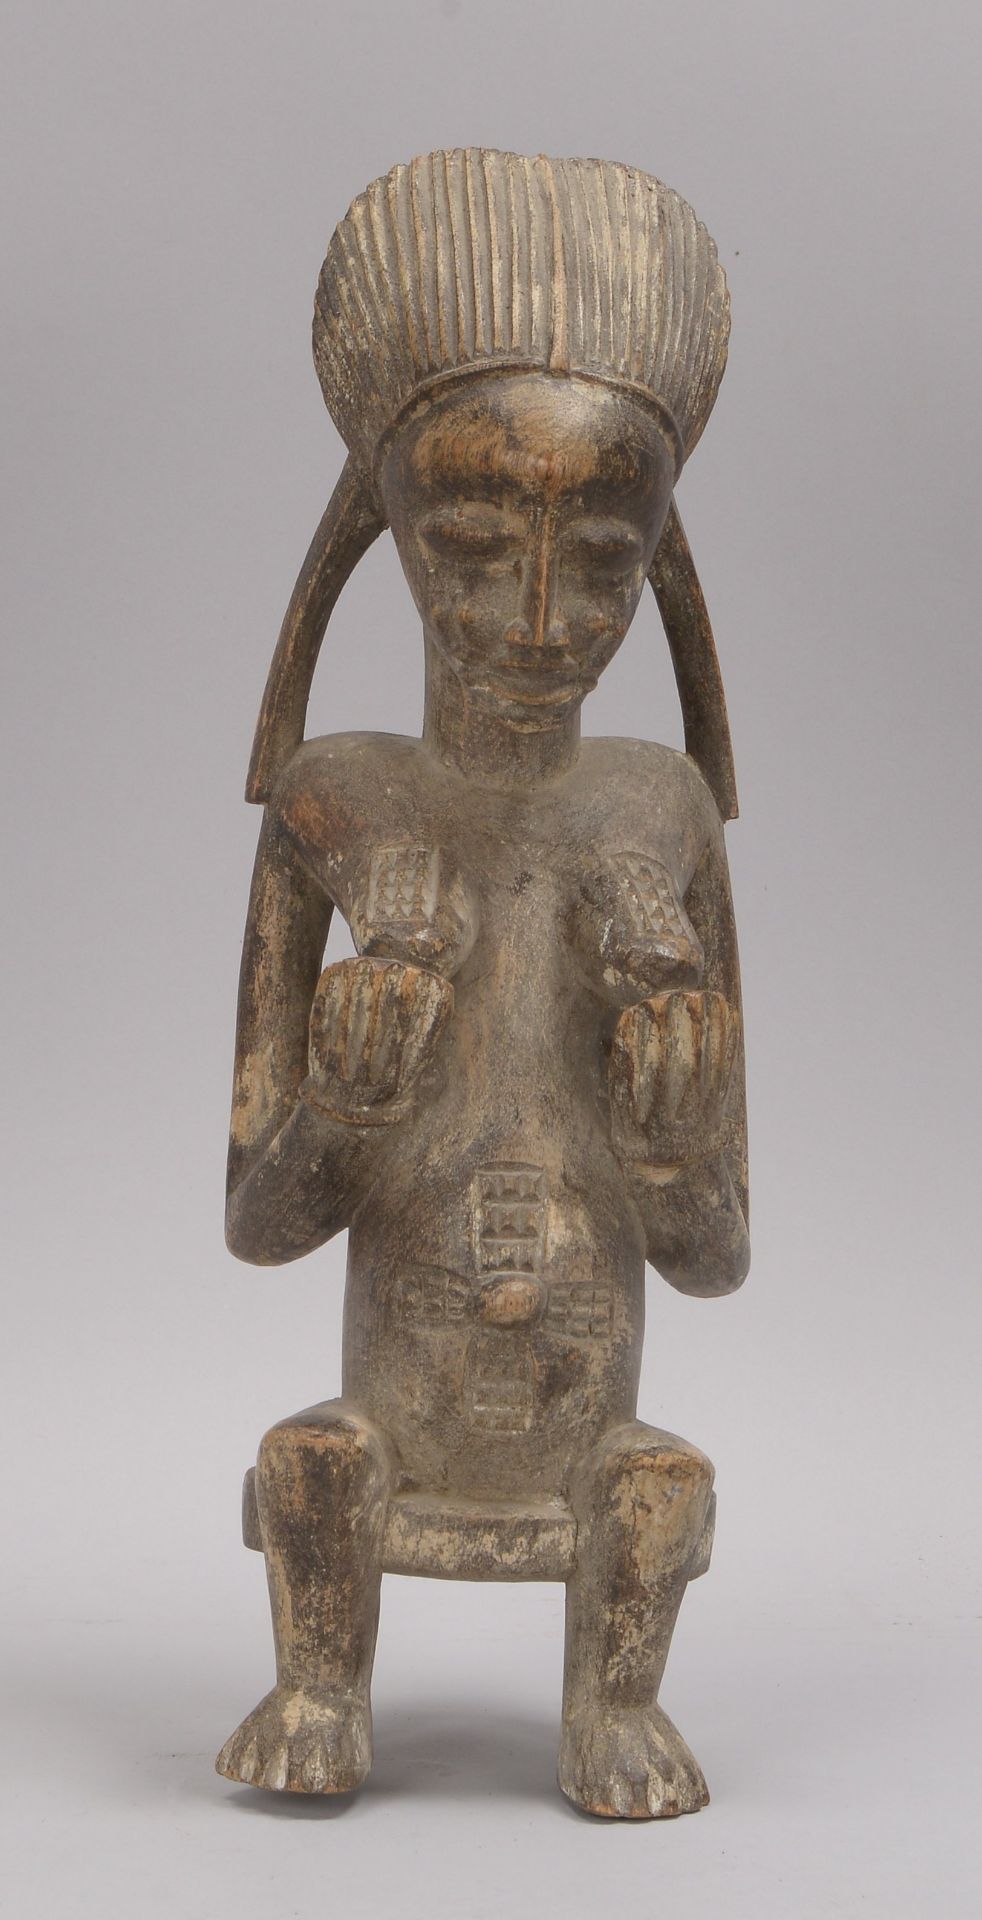 Holzfigur (wohl Kamerun/Afrika), 'Sitzende' (mit vor der Brust gehaltenen Händen dargestellt)